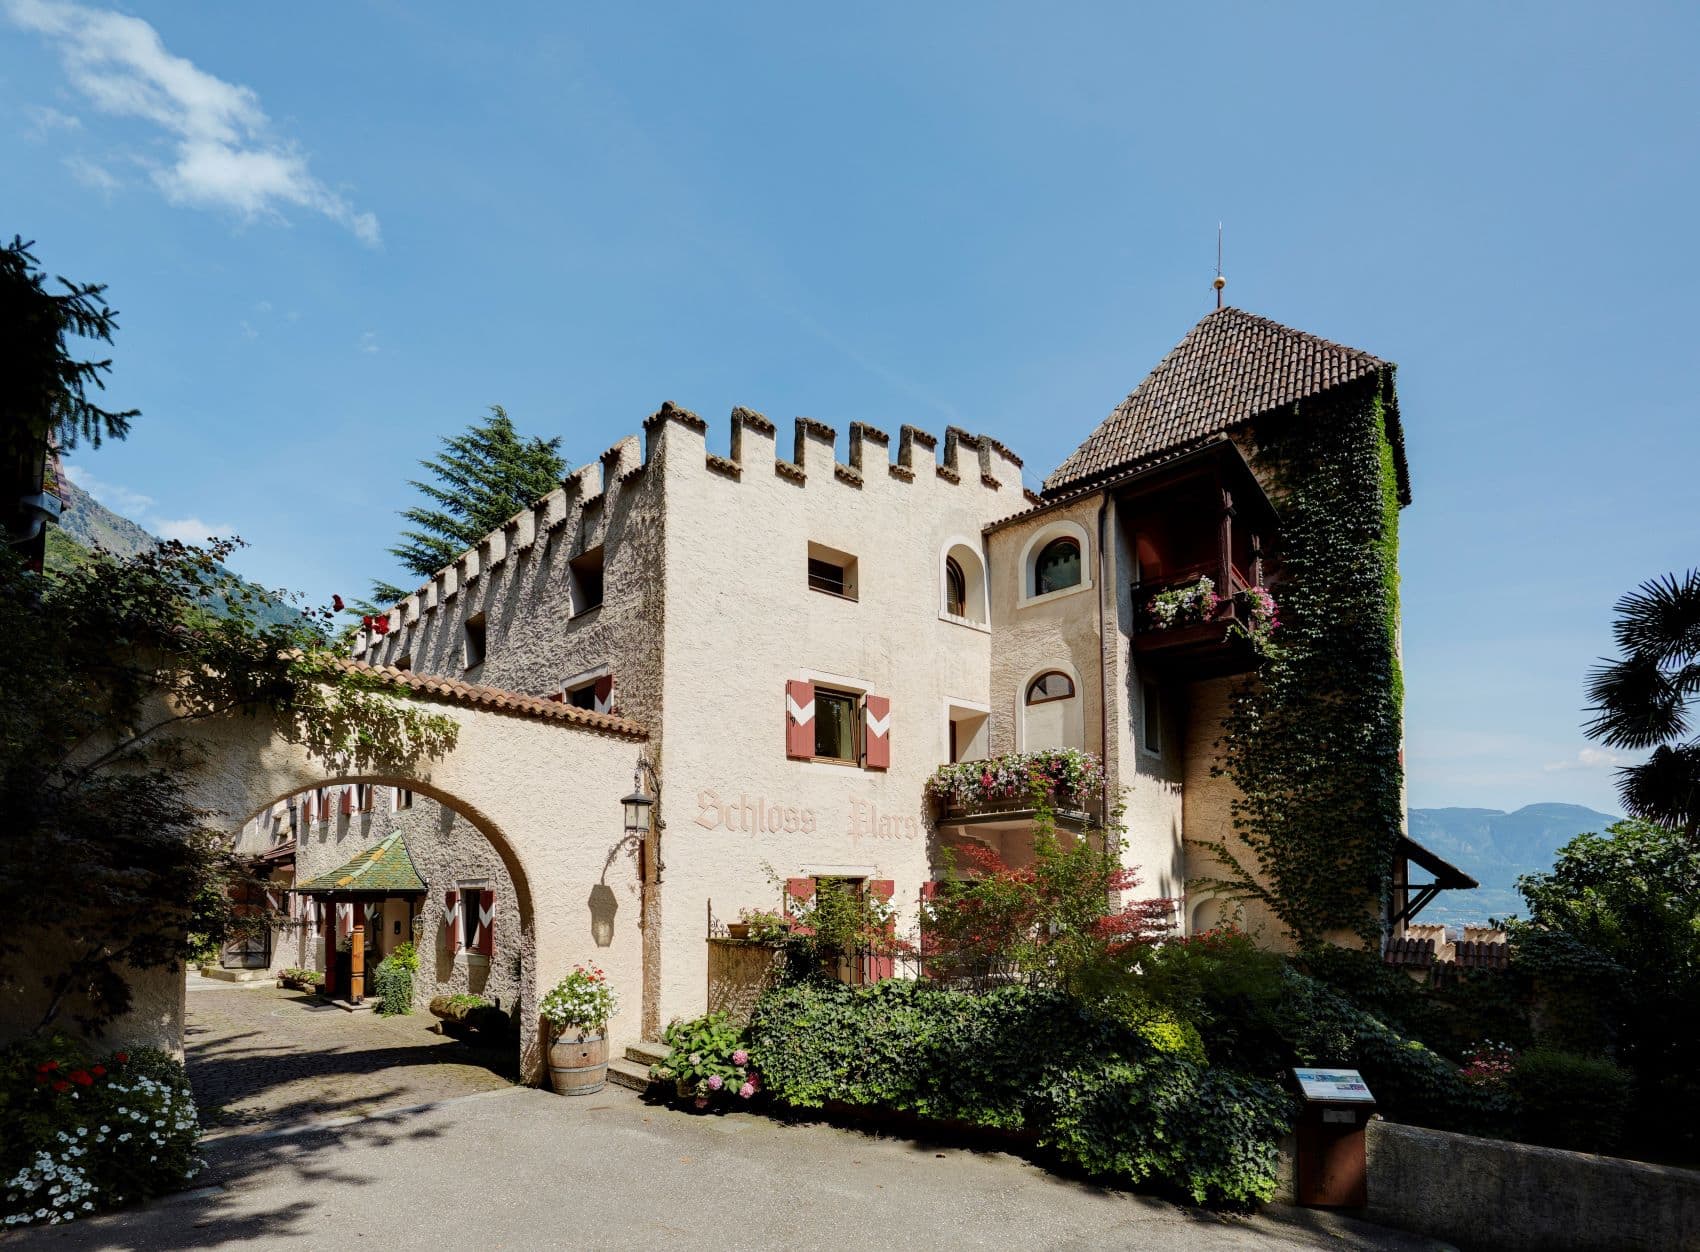 Fassade Hotel Schloss Plars in Algund 